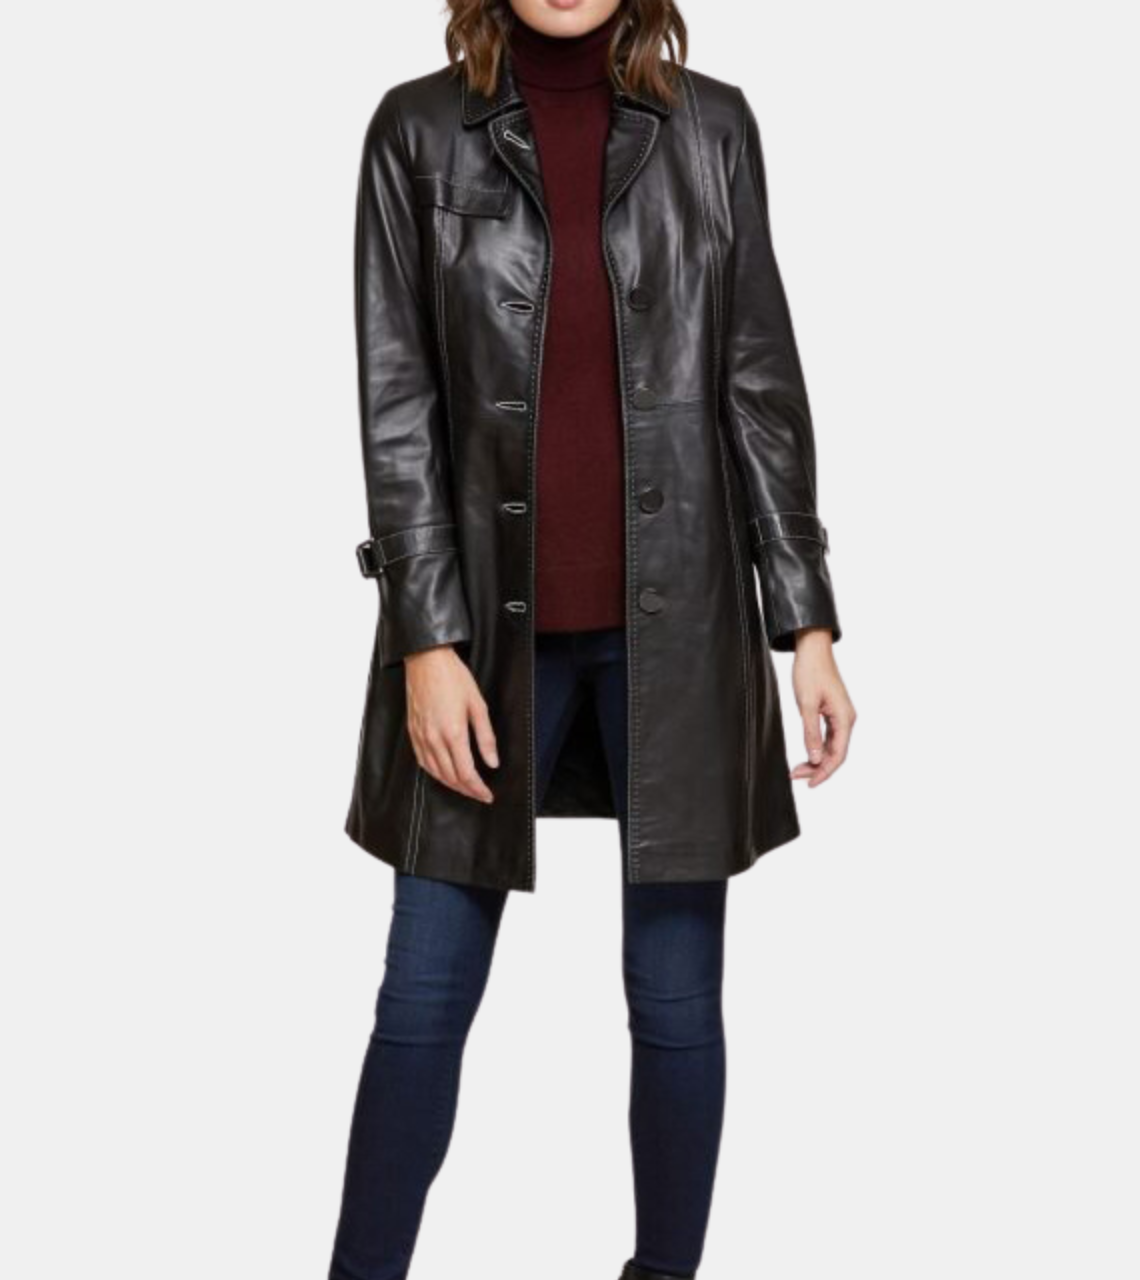  Women's Black Leather Coat